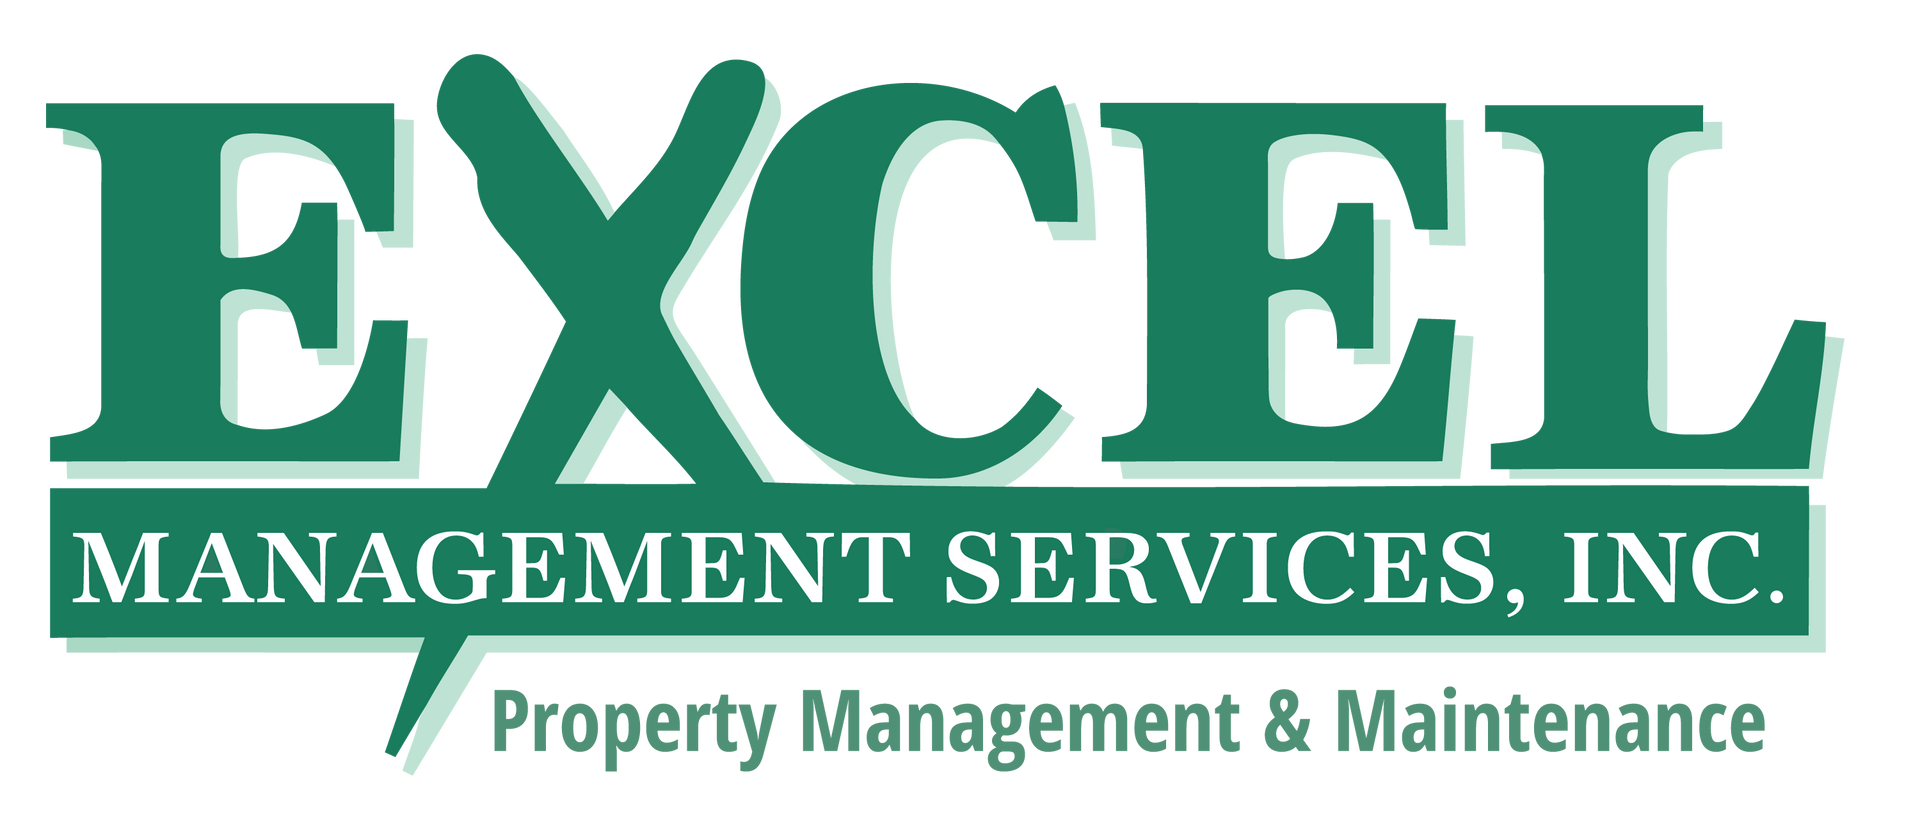 Excel Management Services, Inc.